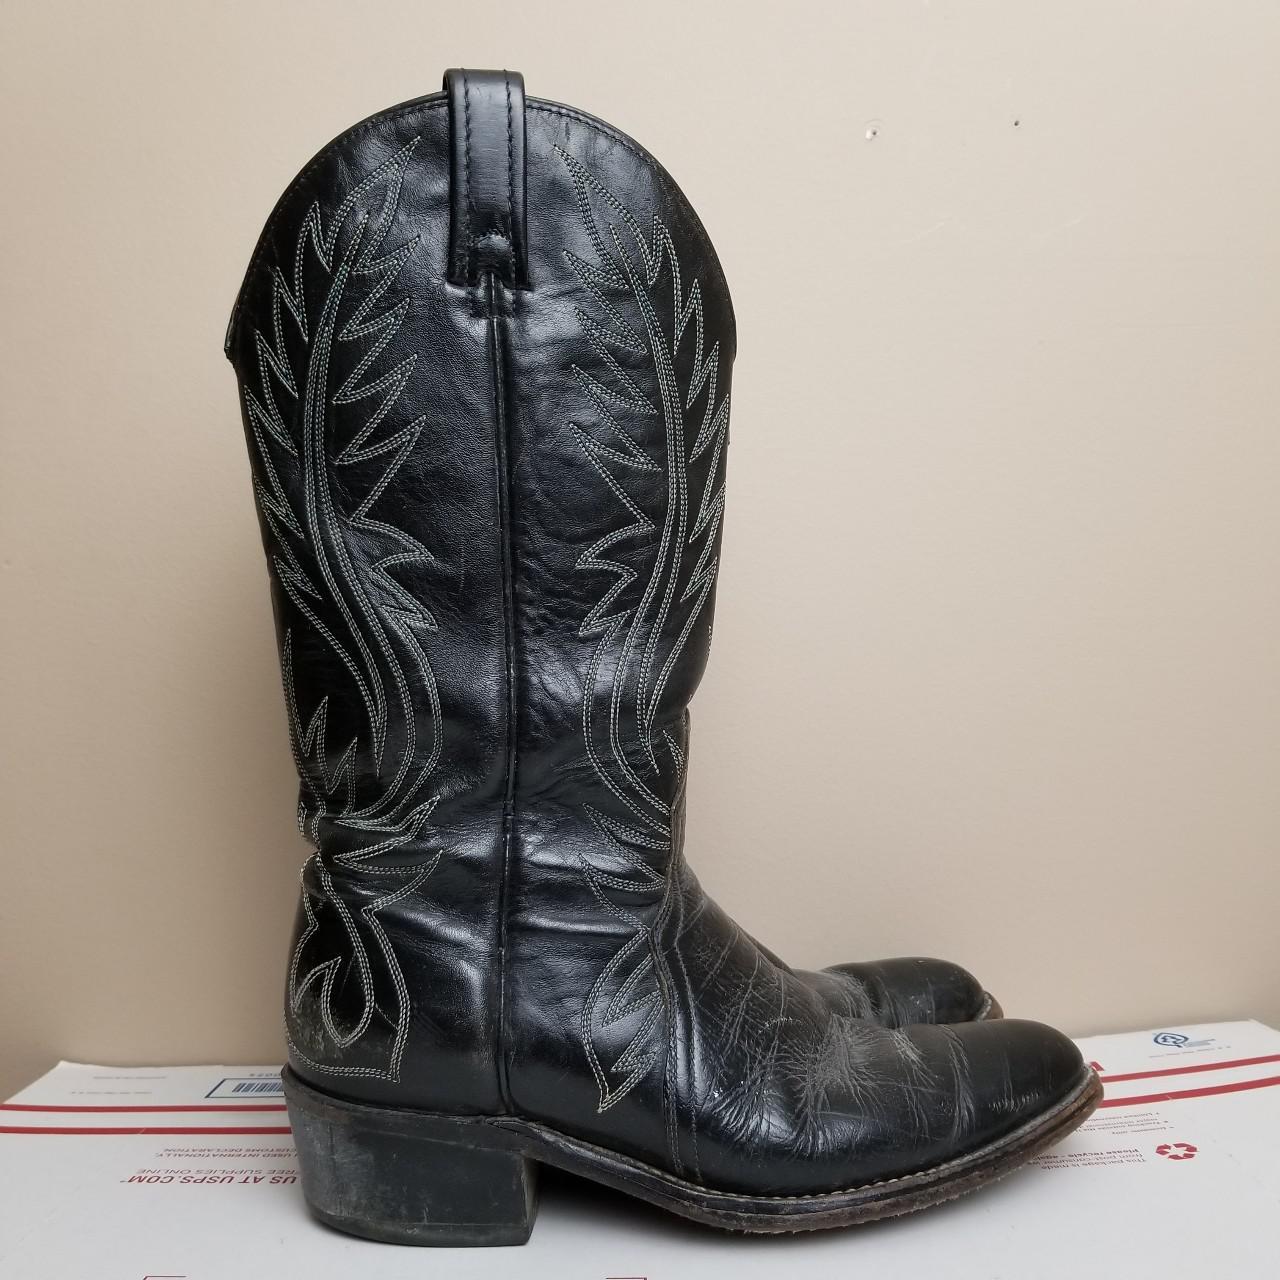 Vintage 80s 90s Acme Leather Cowboy Boots Black... - Depop